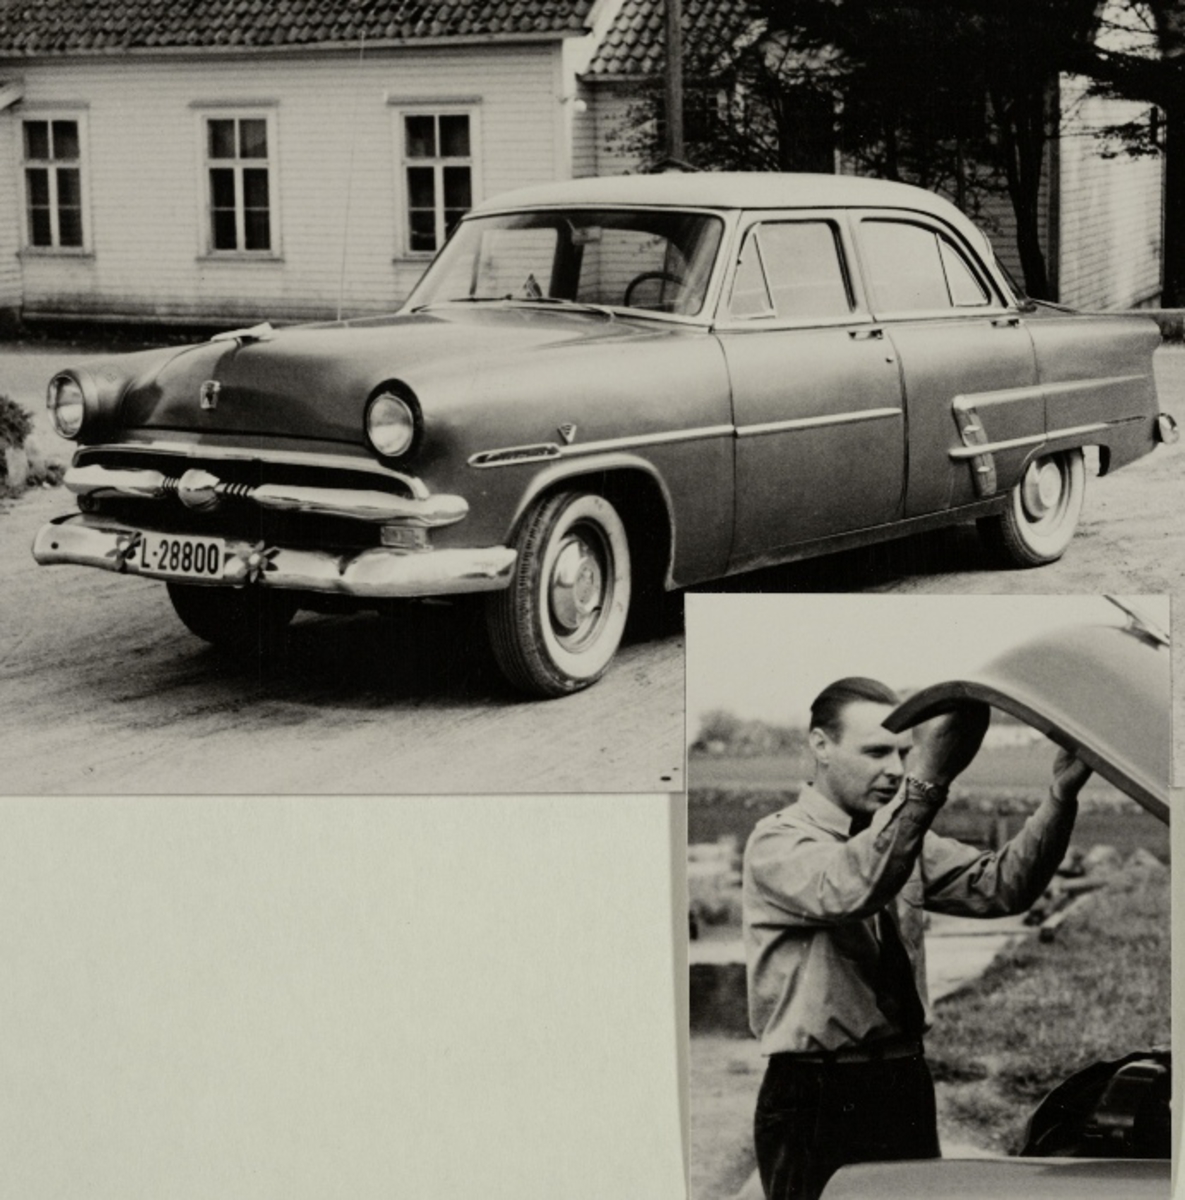 To bilder: stående Ford, 1953-modell, foran et hus og Morten Lea åpner panseret til bilen